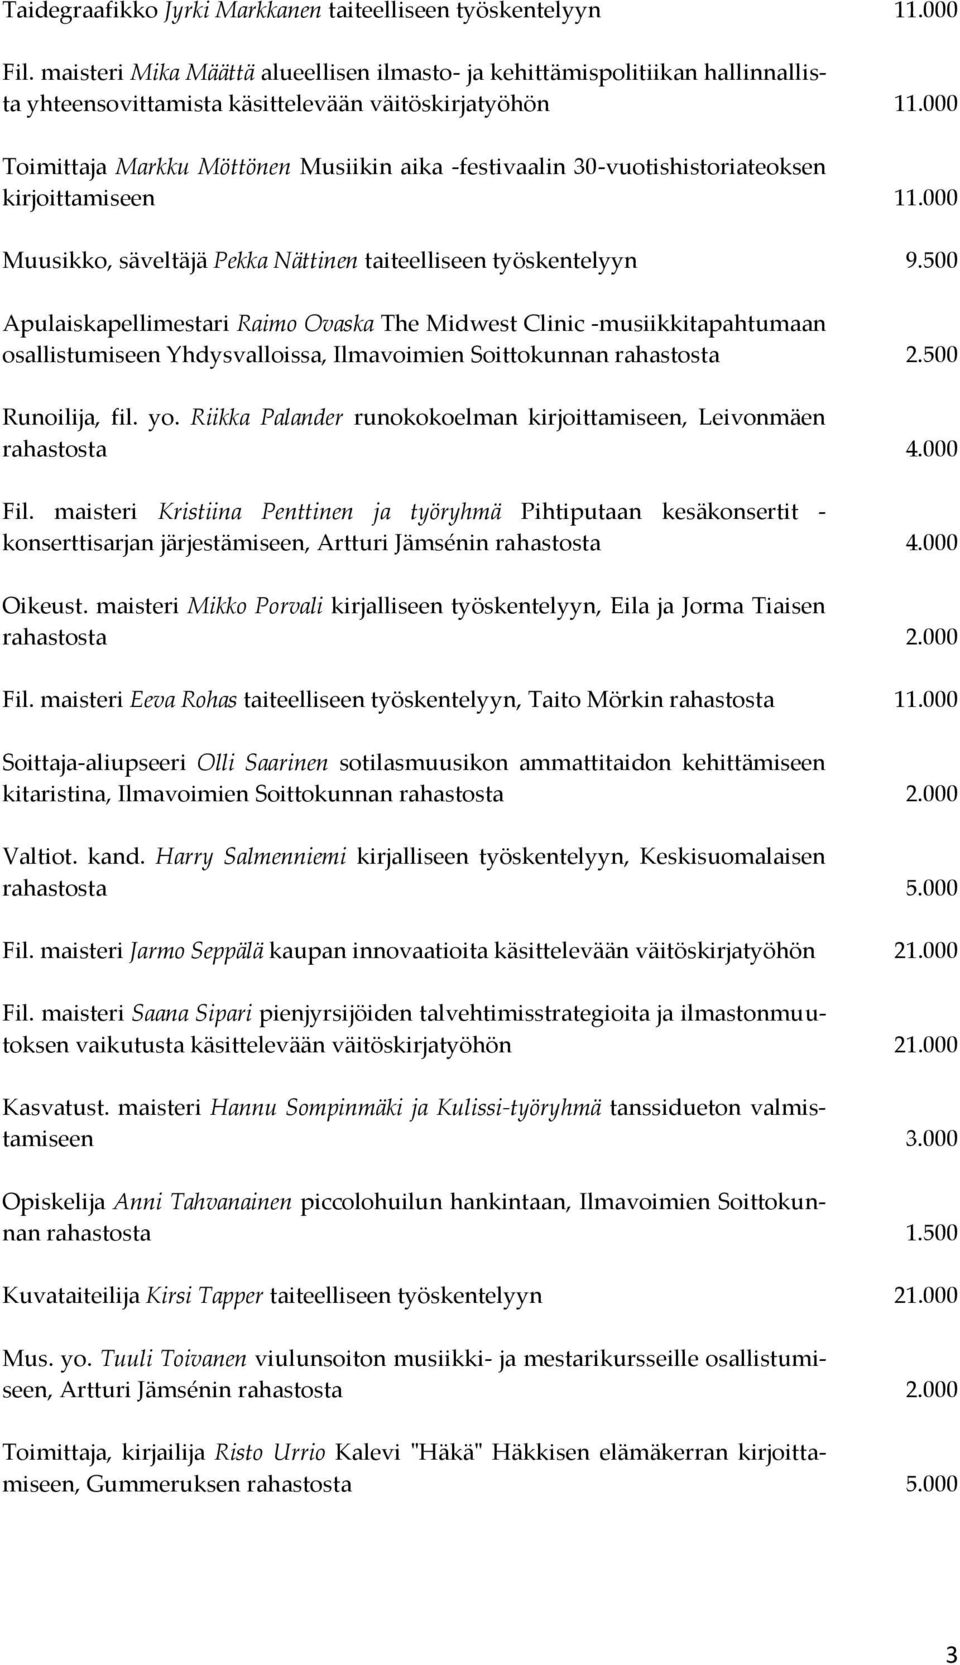 000 Toimittaja Markku Möttönen Musiikin aika -festivaalin 30-vuotishistoriateoksen kirjoittamiseen 11.000 Muusikko, säveltäjä Pekka Nättinen taiteelliseen työskentelyyn 9.